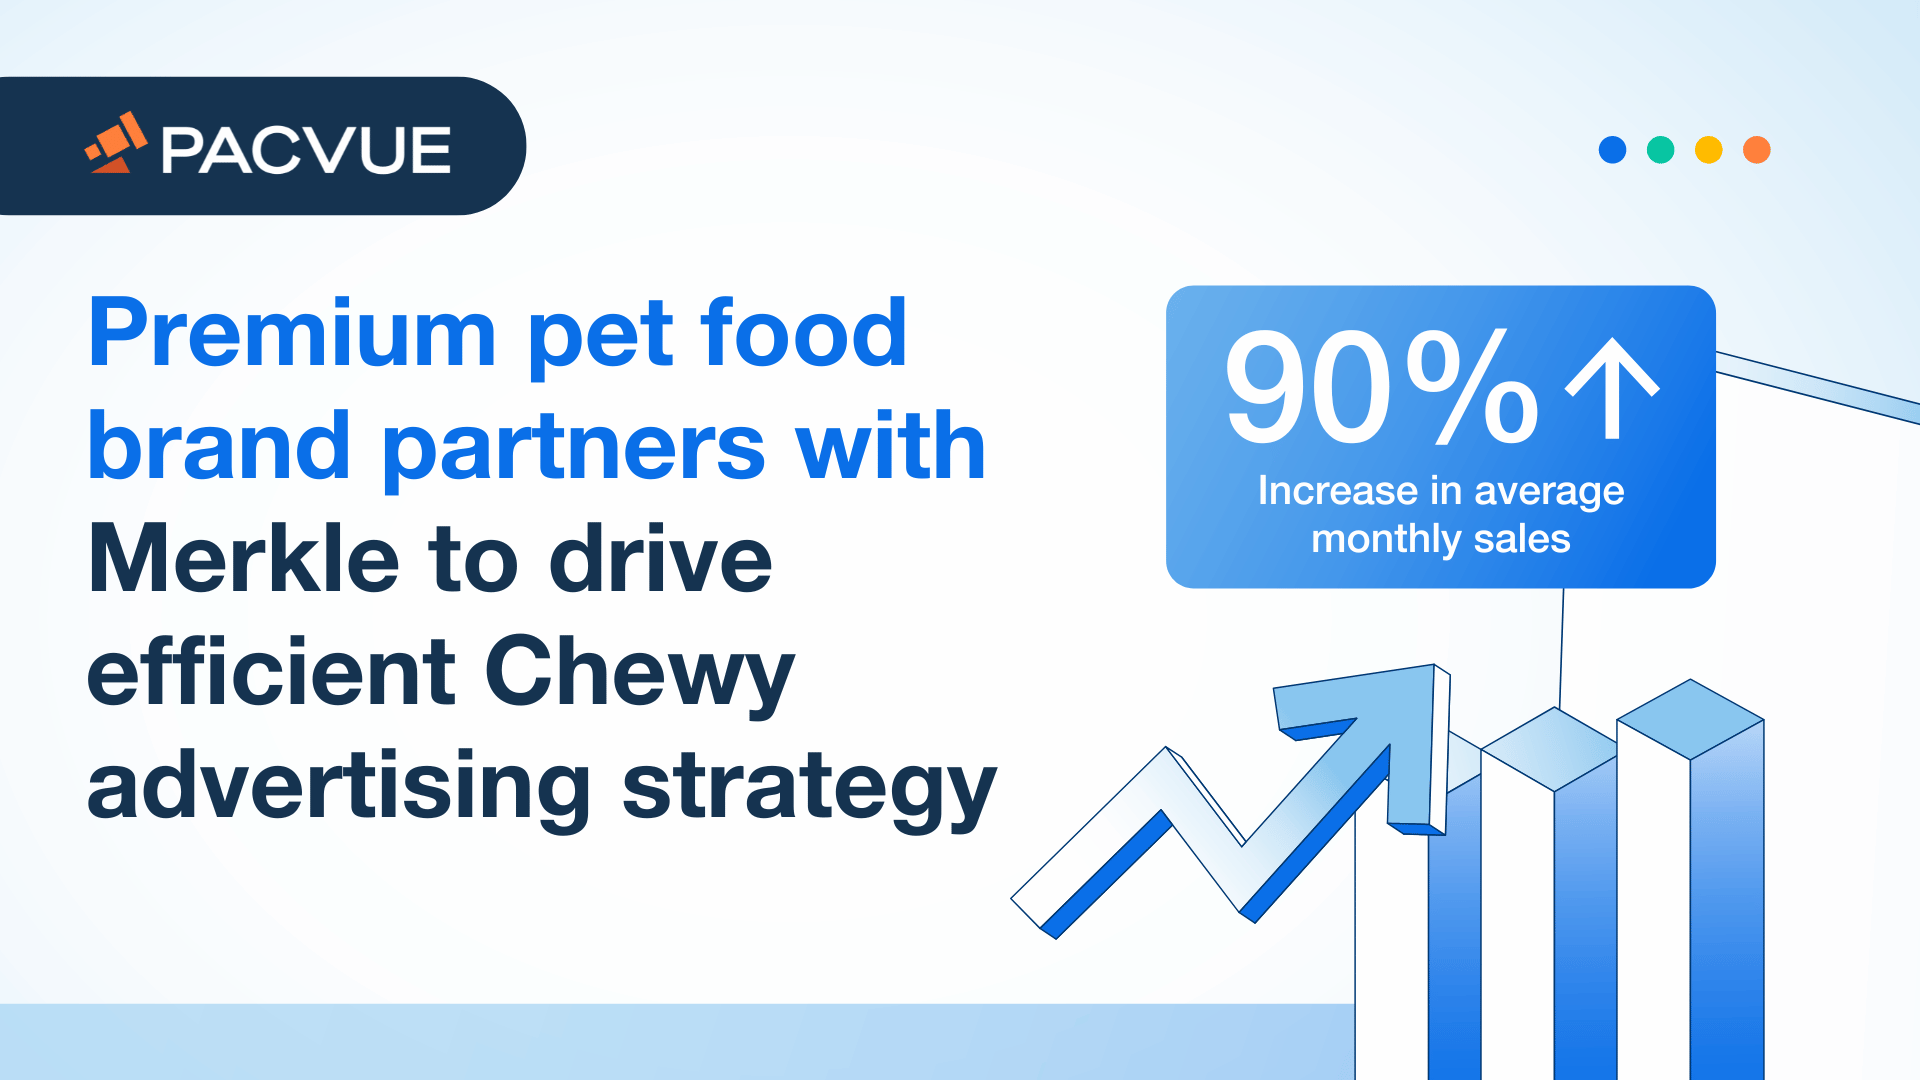 Premium-Tiernahrungsmarke arbeitet mit Merkle zusammen, um eine effiziente Chewy Werbestrategie zu verfolgen